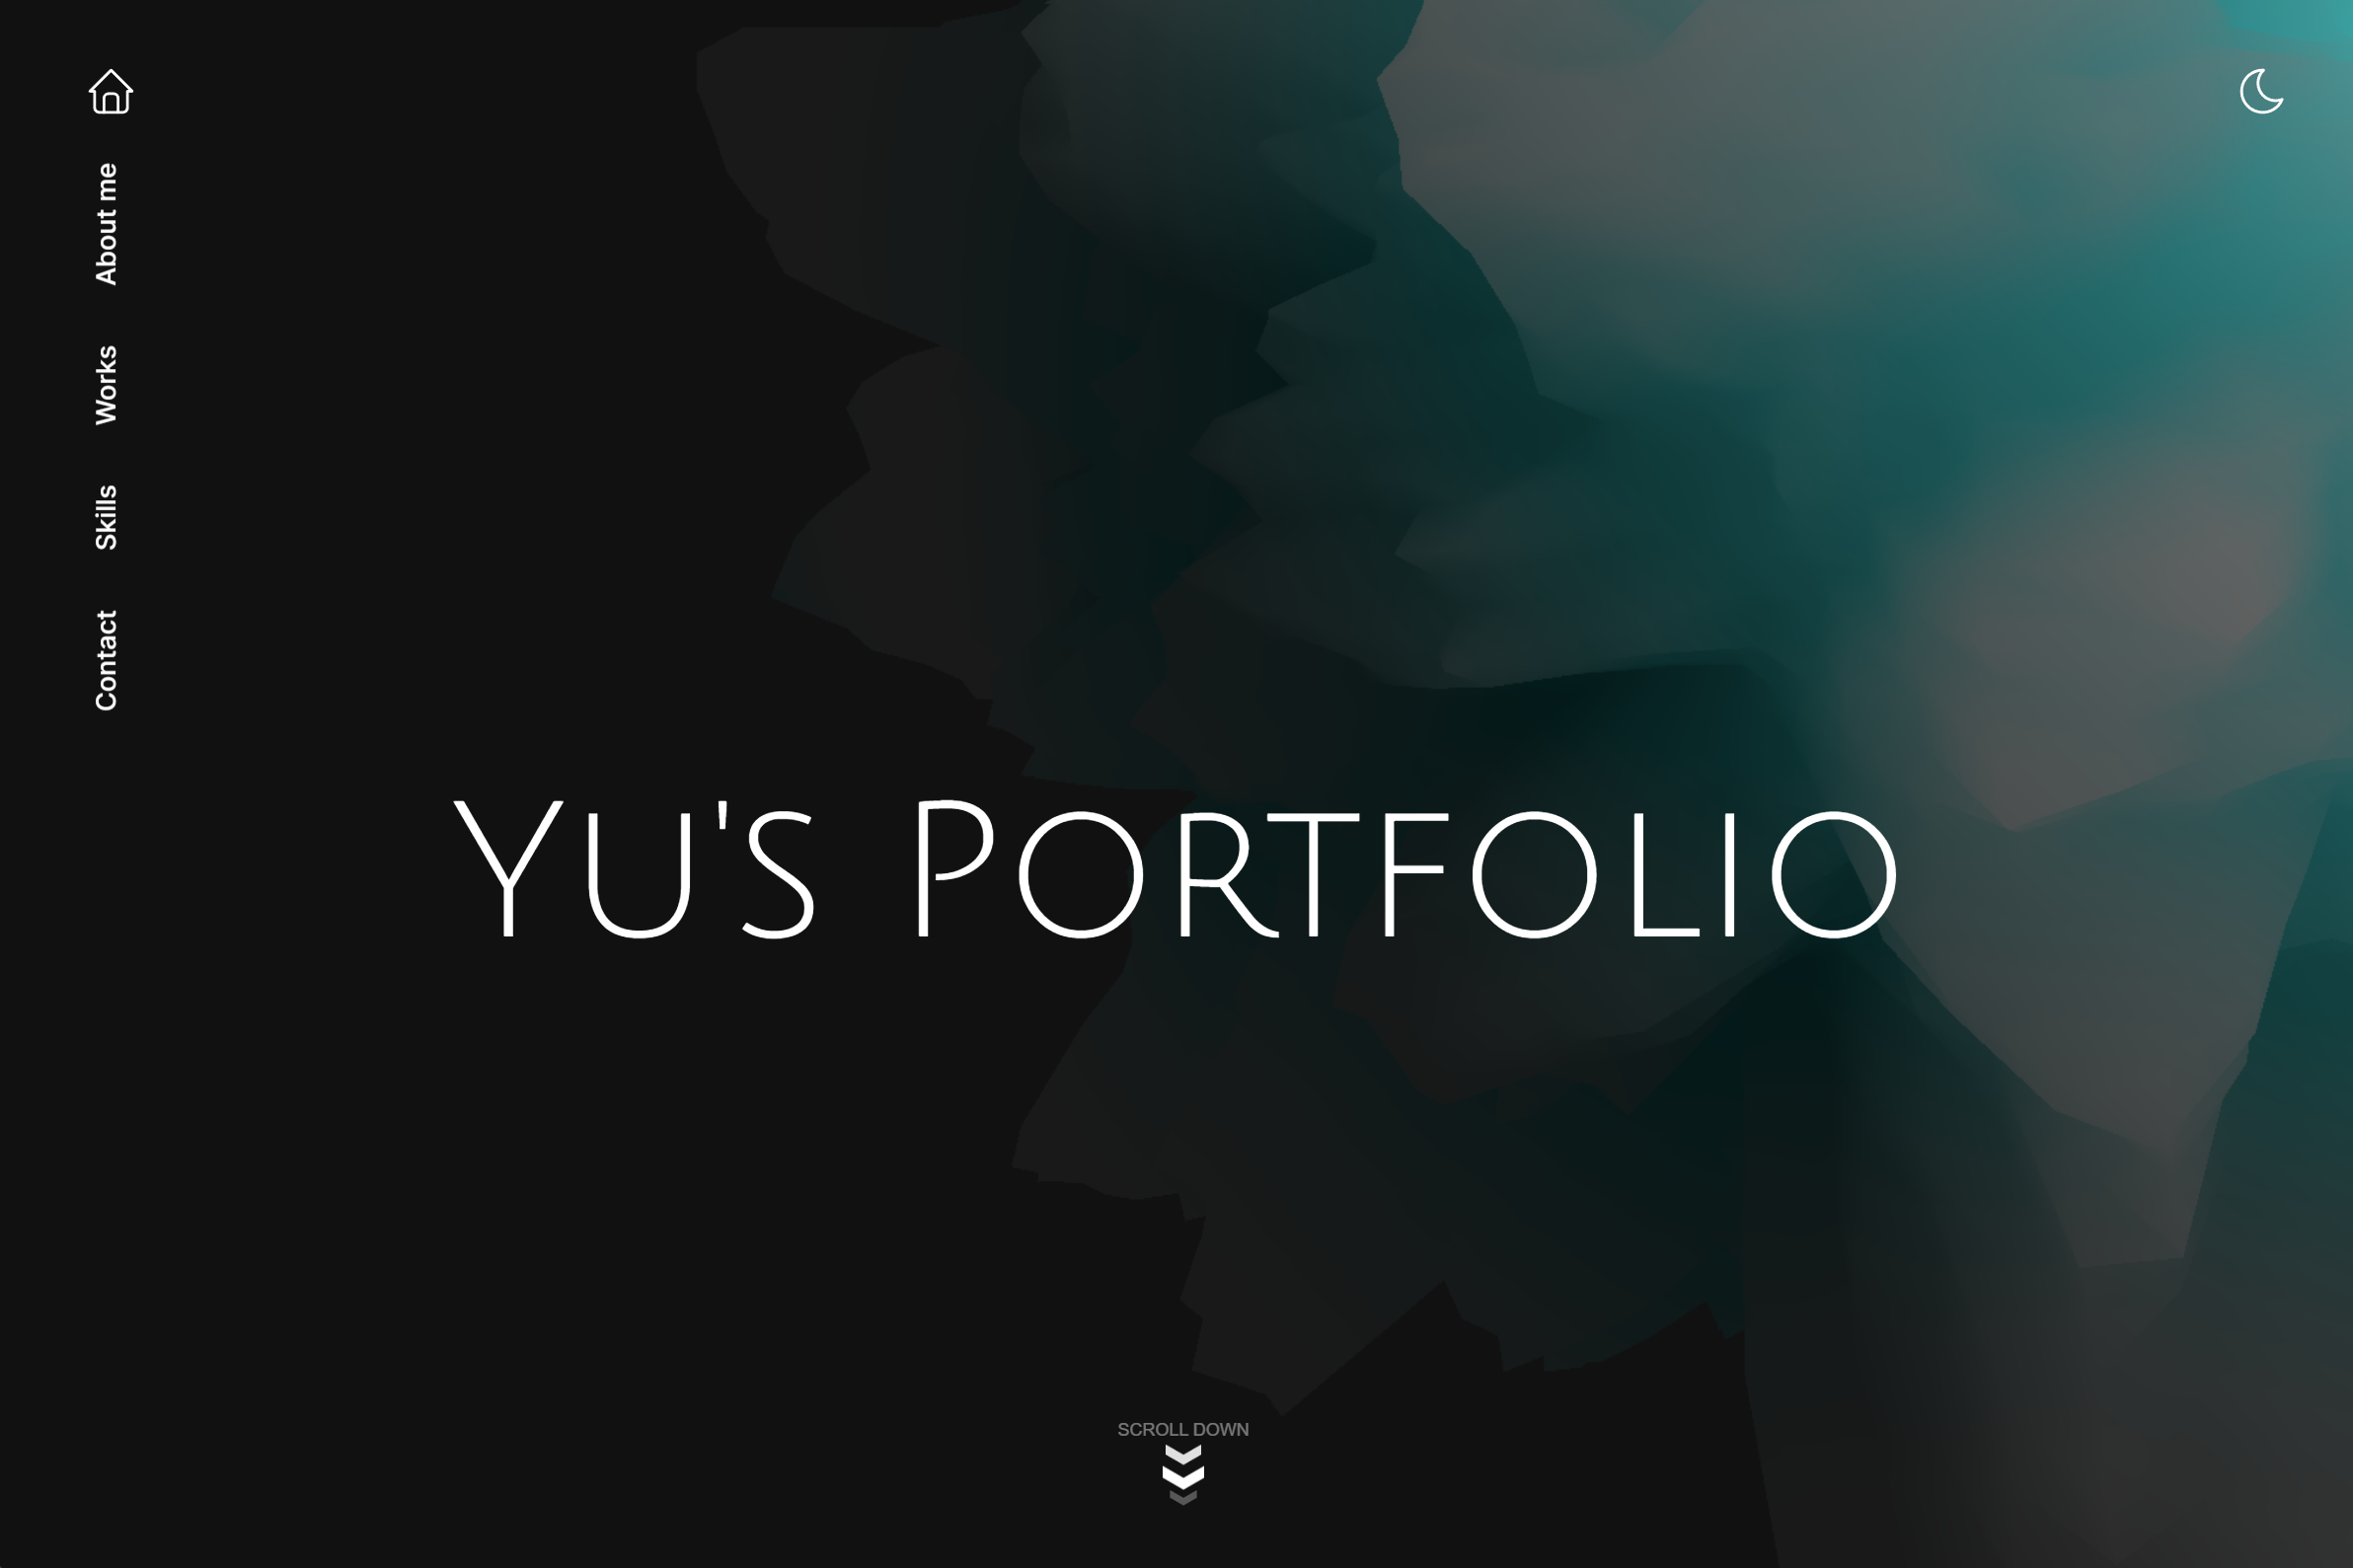 Yu's Portfolio